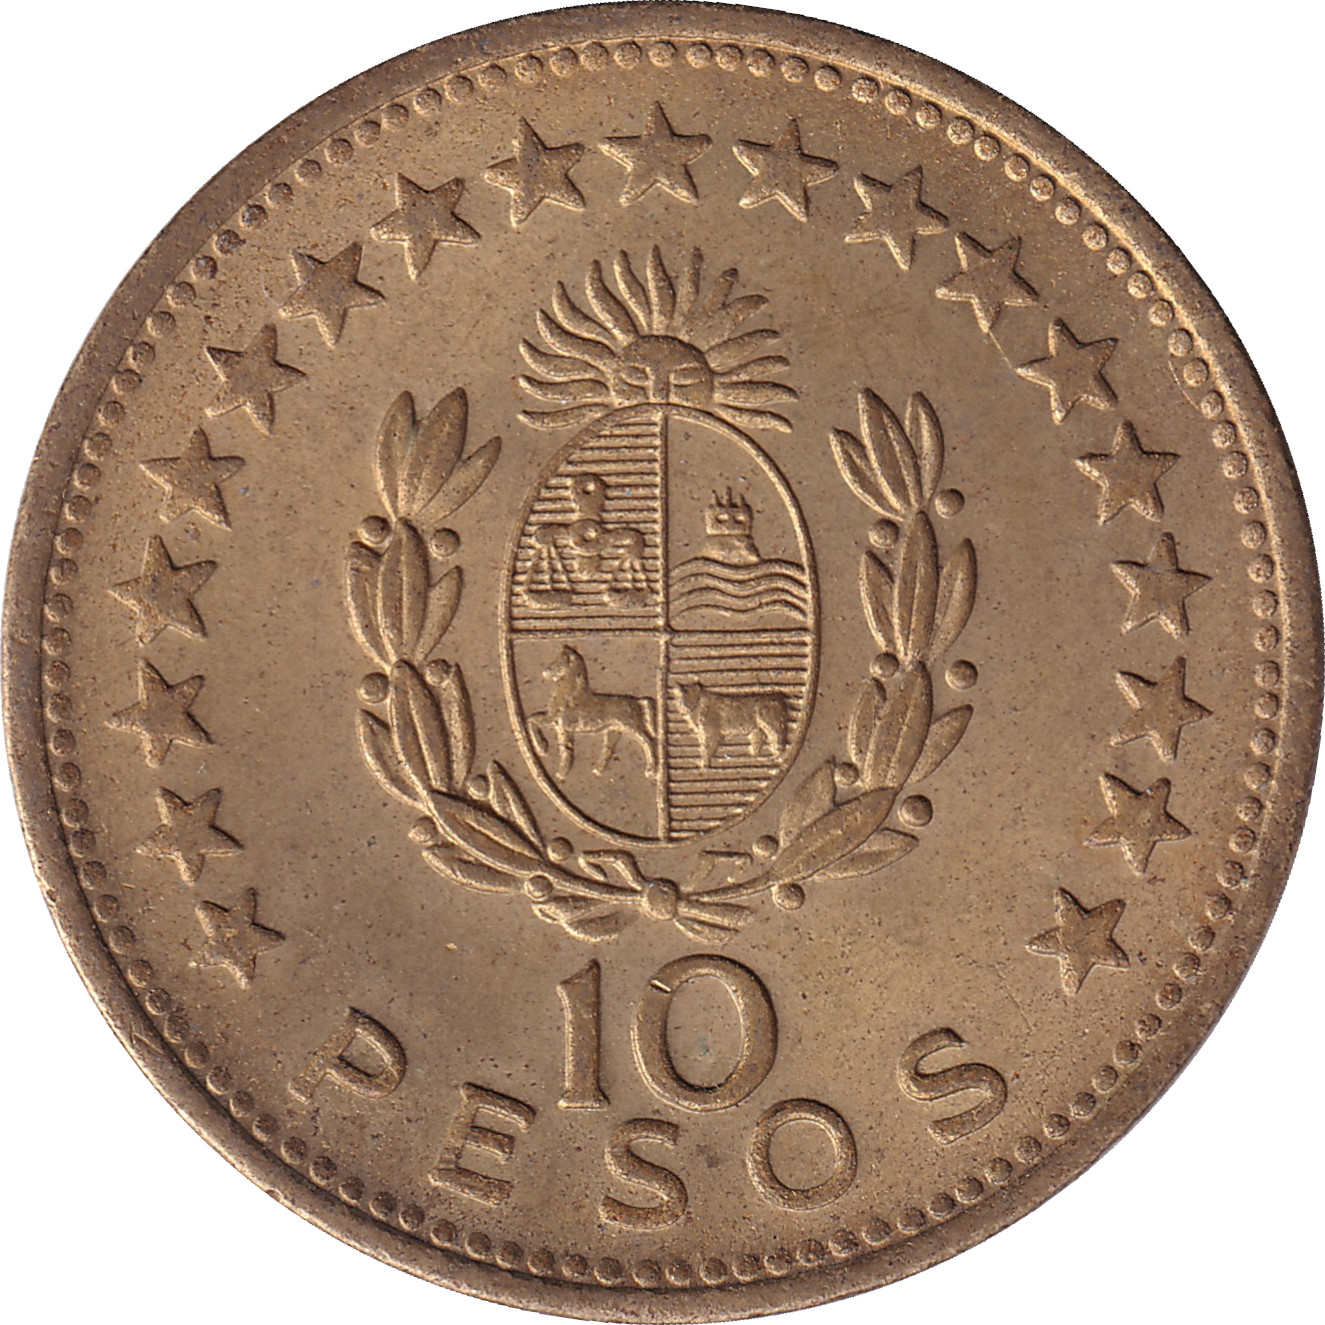 10 pesos - Artigas - Shield